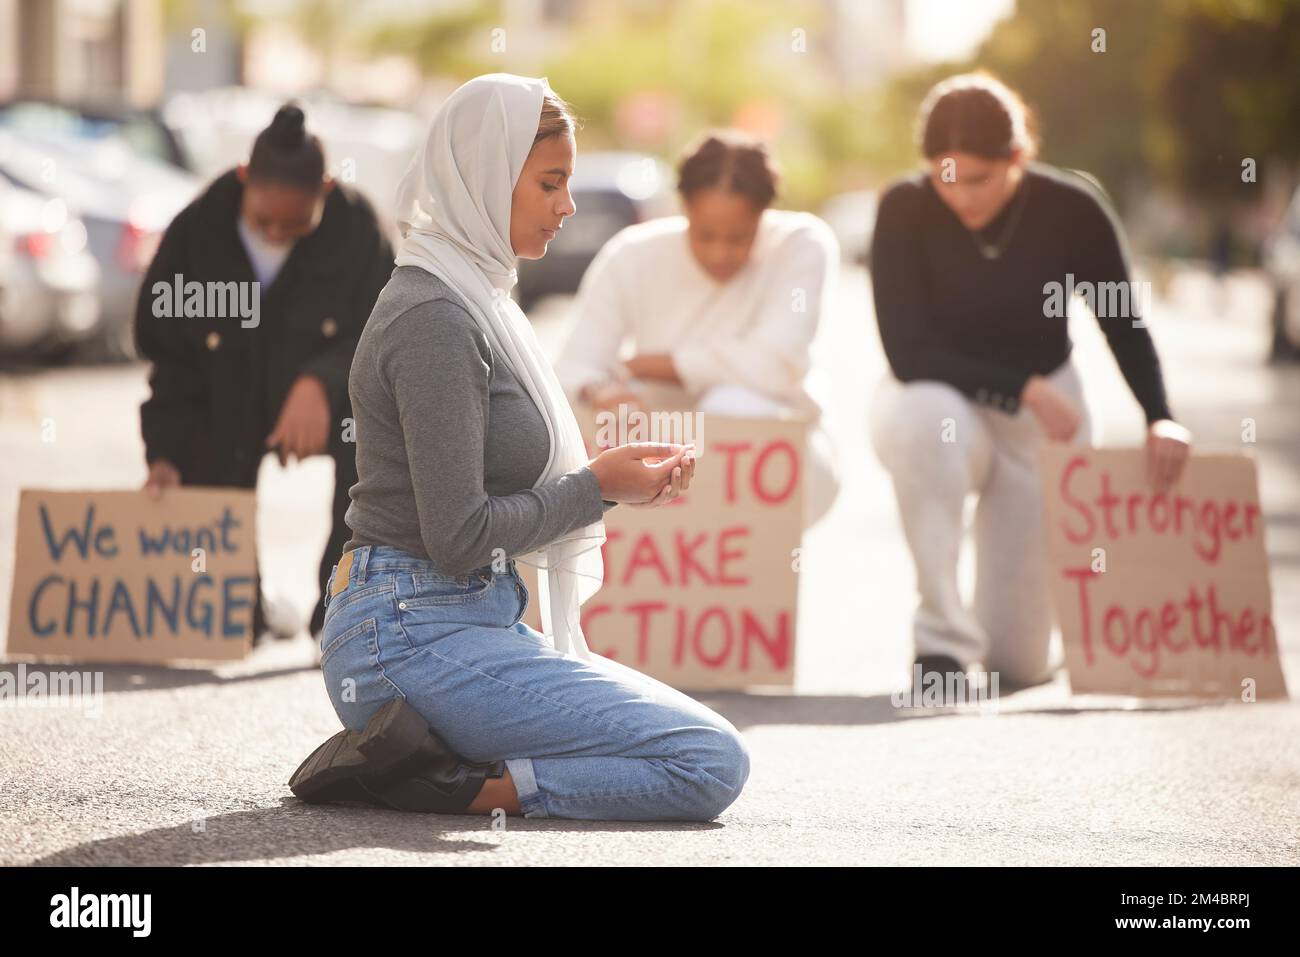 Protest, islamische Frau und Beten auf der Straße, Gruppierung und Unterstützung für Palästina. Muslimische Frauen, Mädchen oder Demonstranten mit Pappschildern, kämpfen für Gerechtigkeit Stockfoto